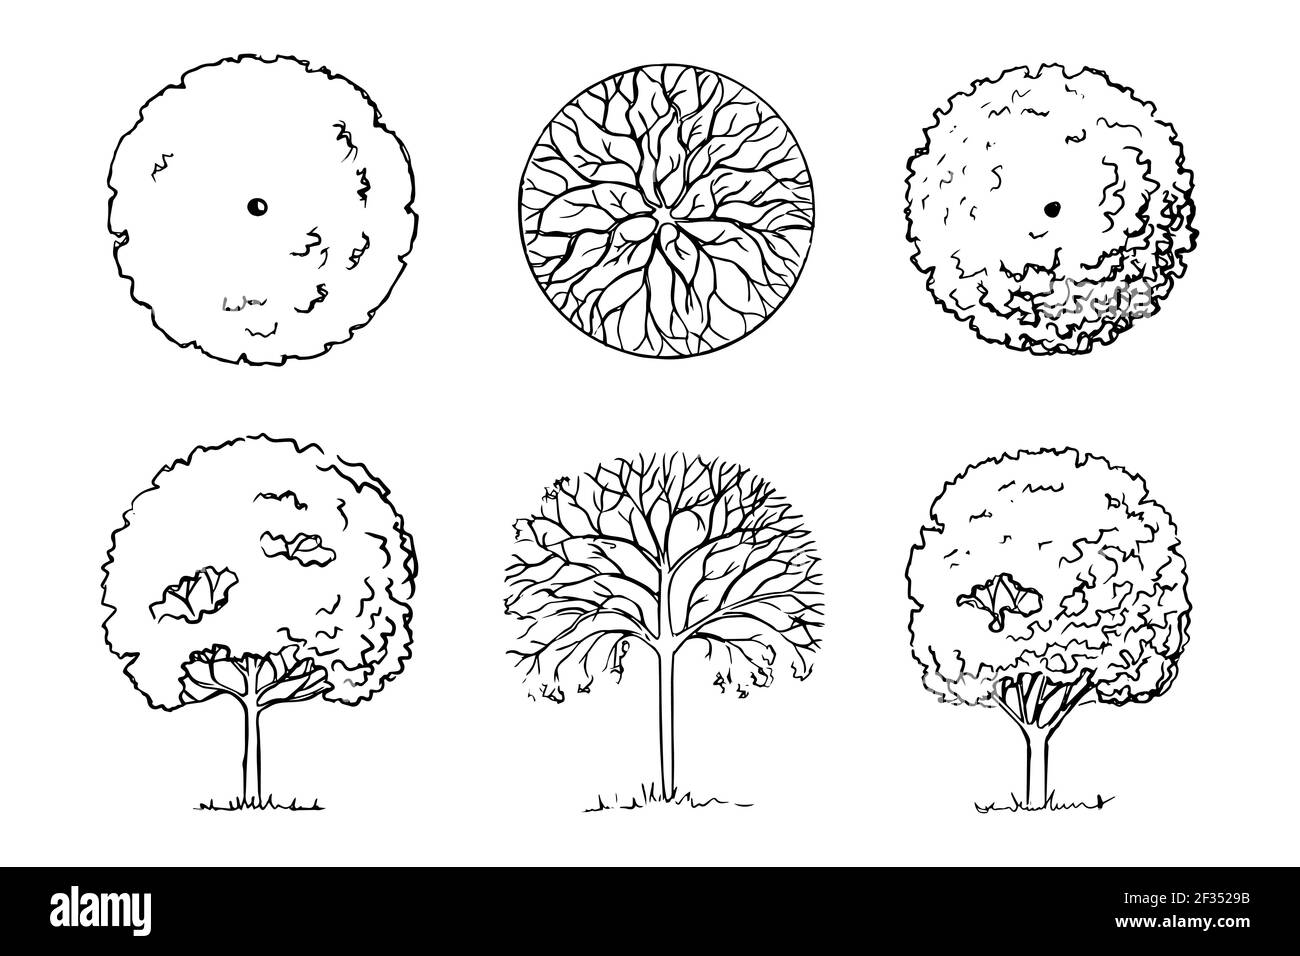 Handgezeichnete Skizze von Bäumen. Landschaftsgestaltung. Drei Laubbäume Garten Gehölze Vorderansicht und Draufsicht. Schwarz-Weiß-Grafiken. Isoliert auf einer weißen BA Stock Vektor